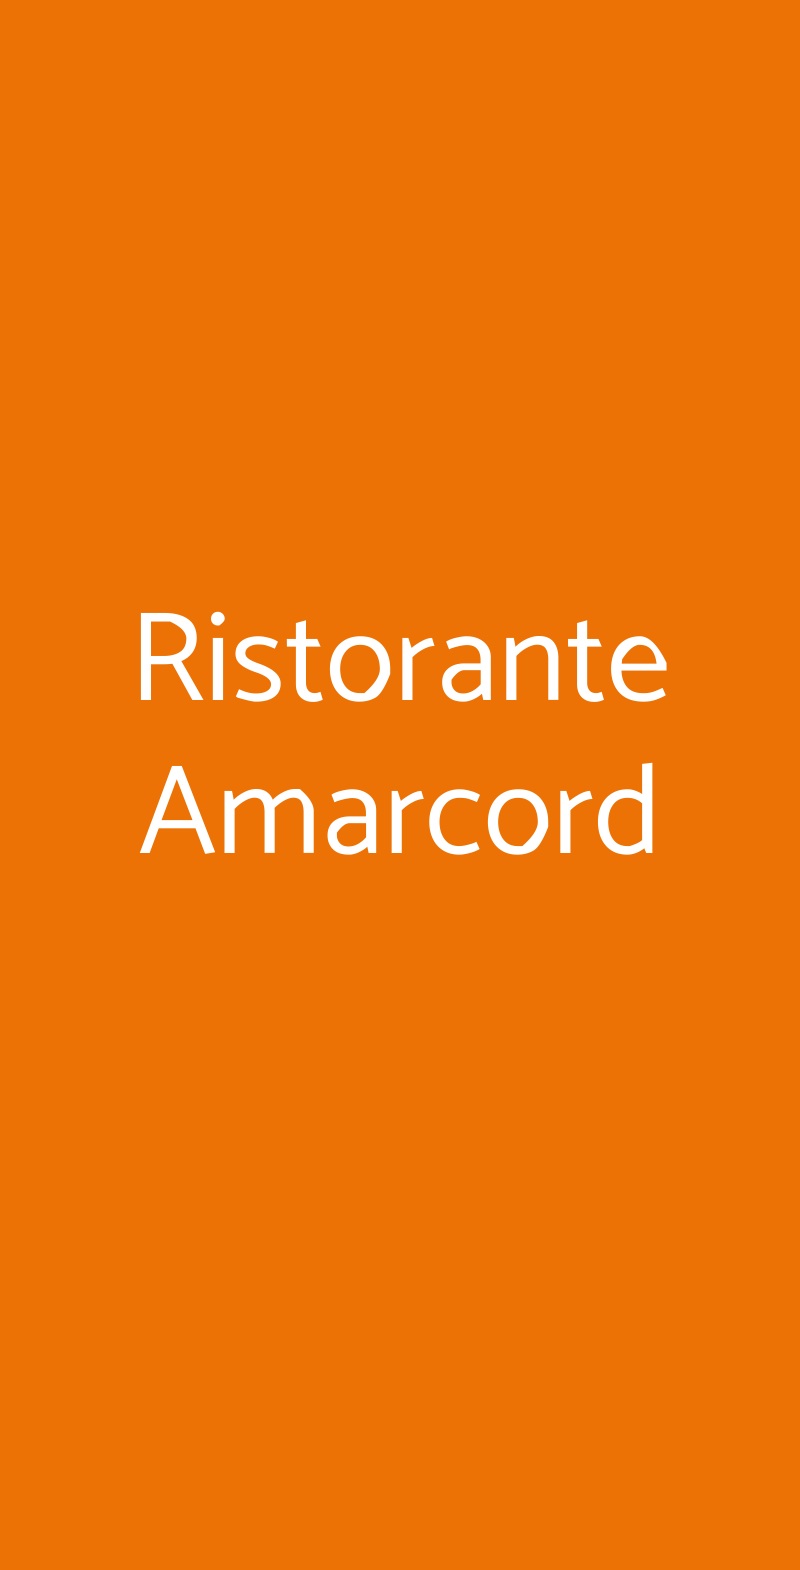 Ristorante Amarcord Milano menù 1 pagina